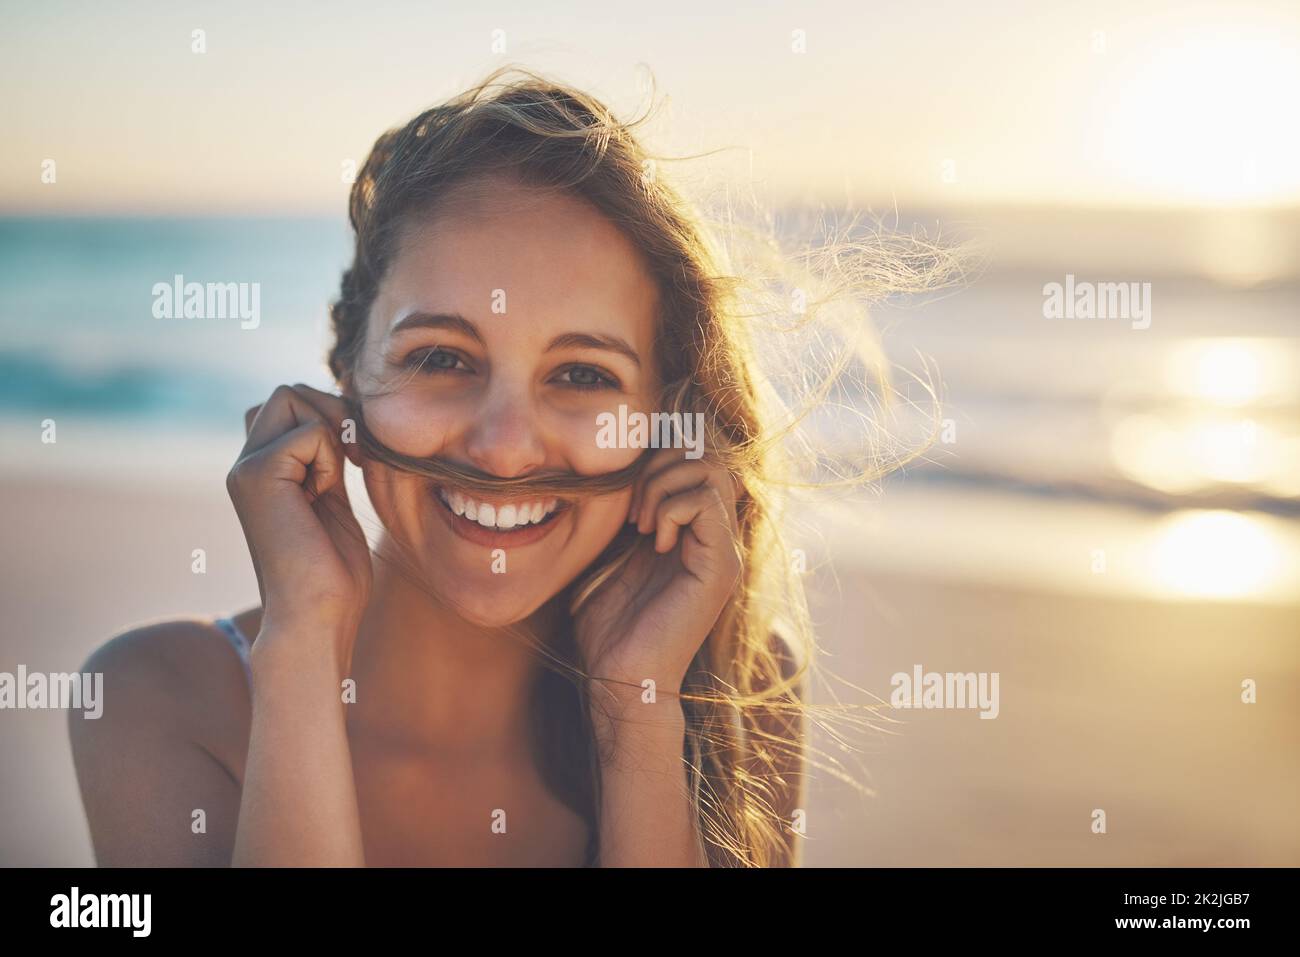 Il segreto della felicità è la libertà. Scatto ritagliato di una donna che fa un baffi giocosamente con i suoi capelli. Foto Stock